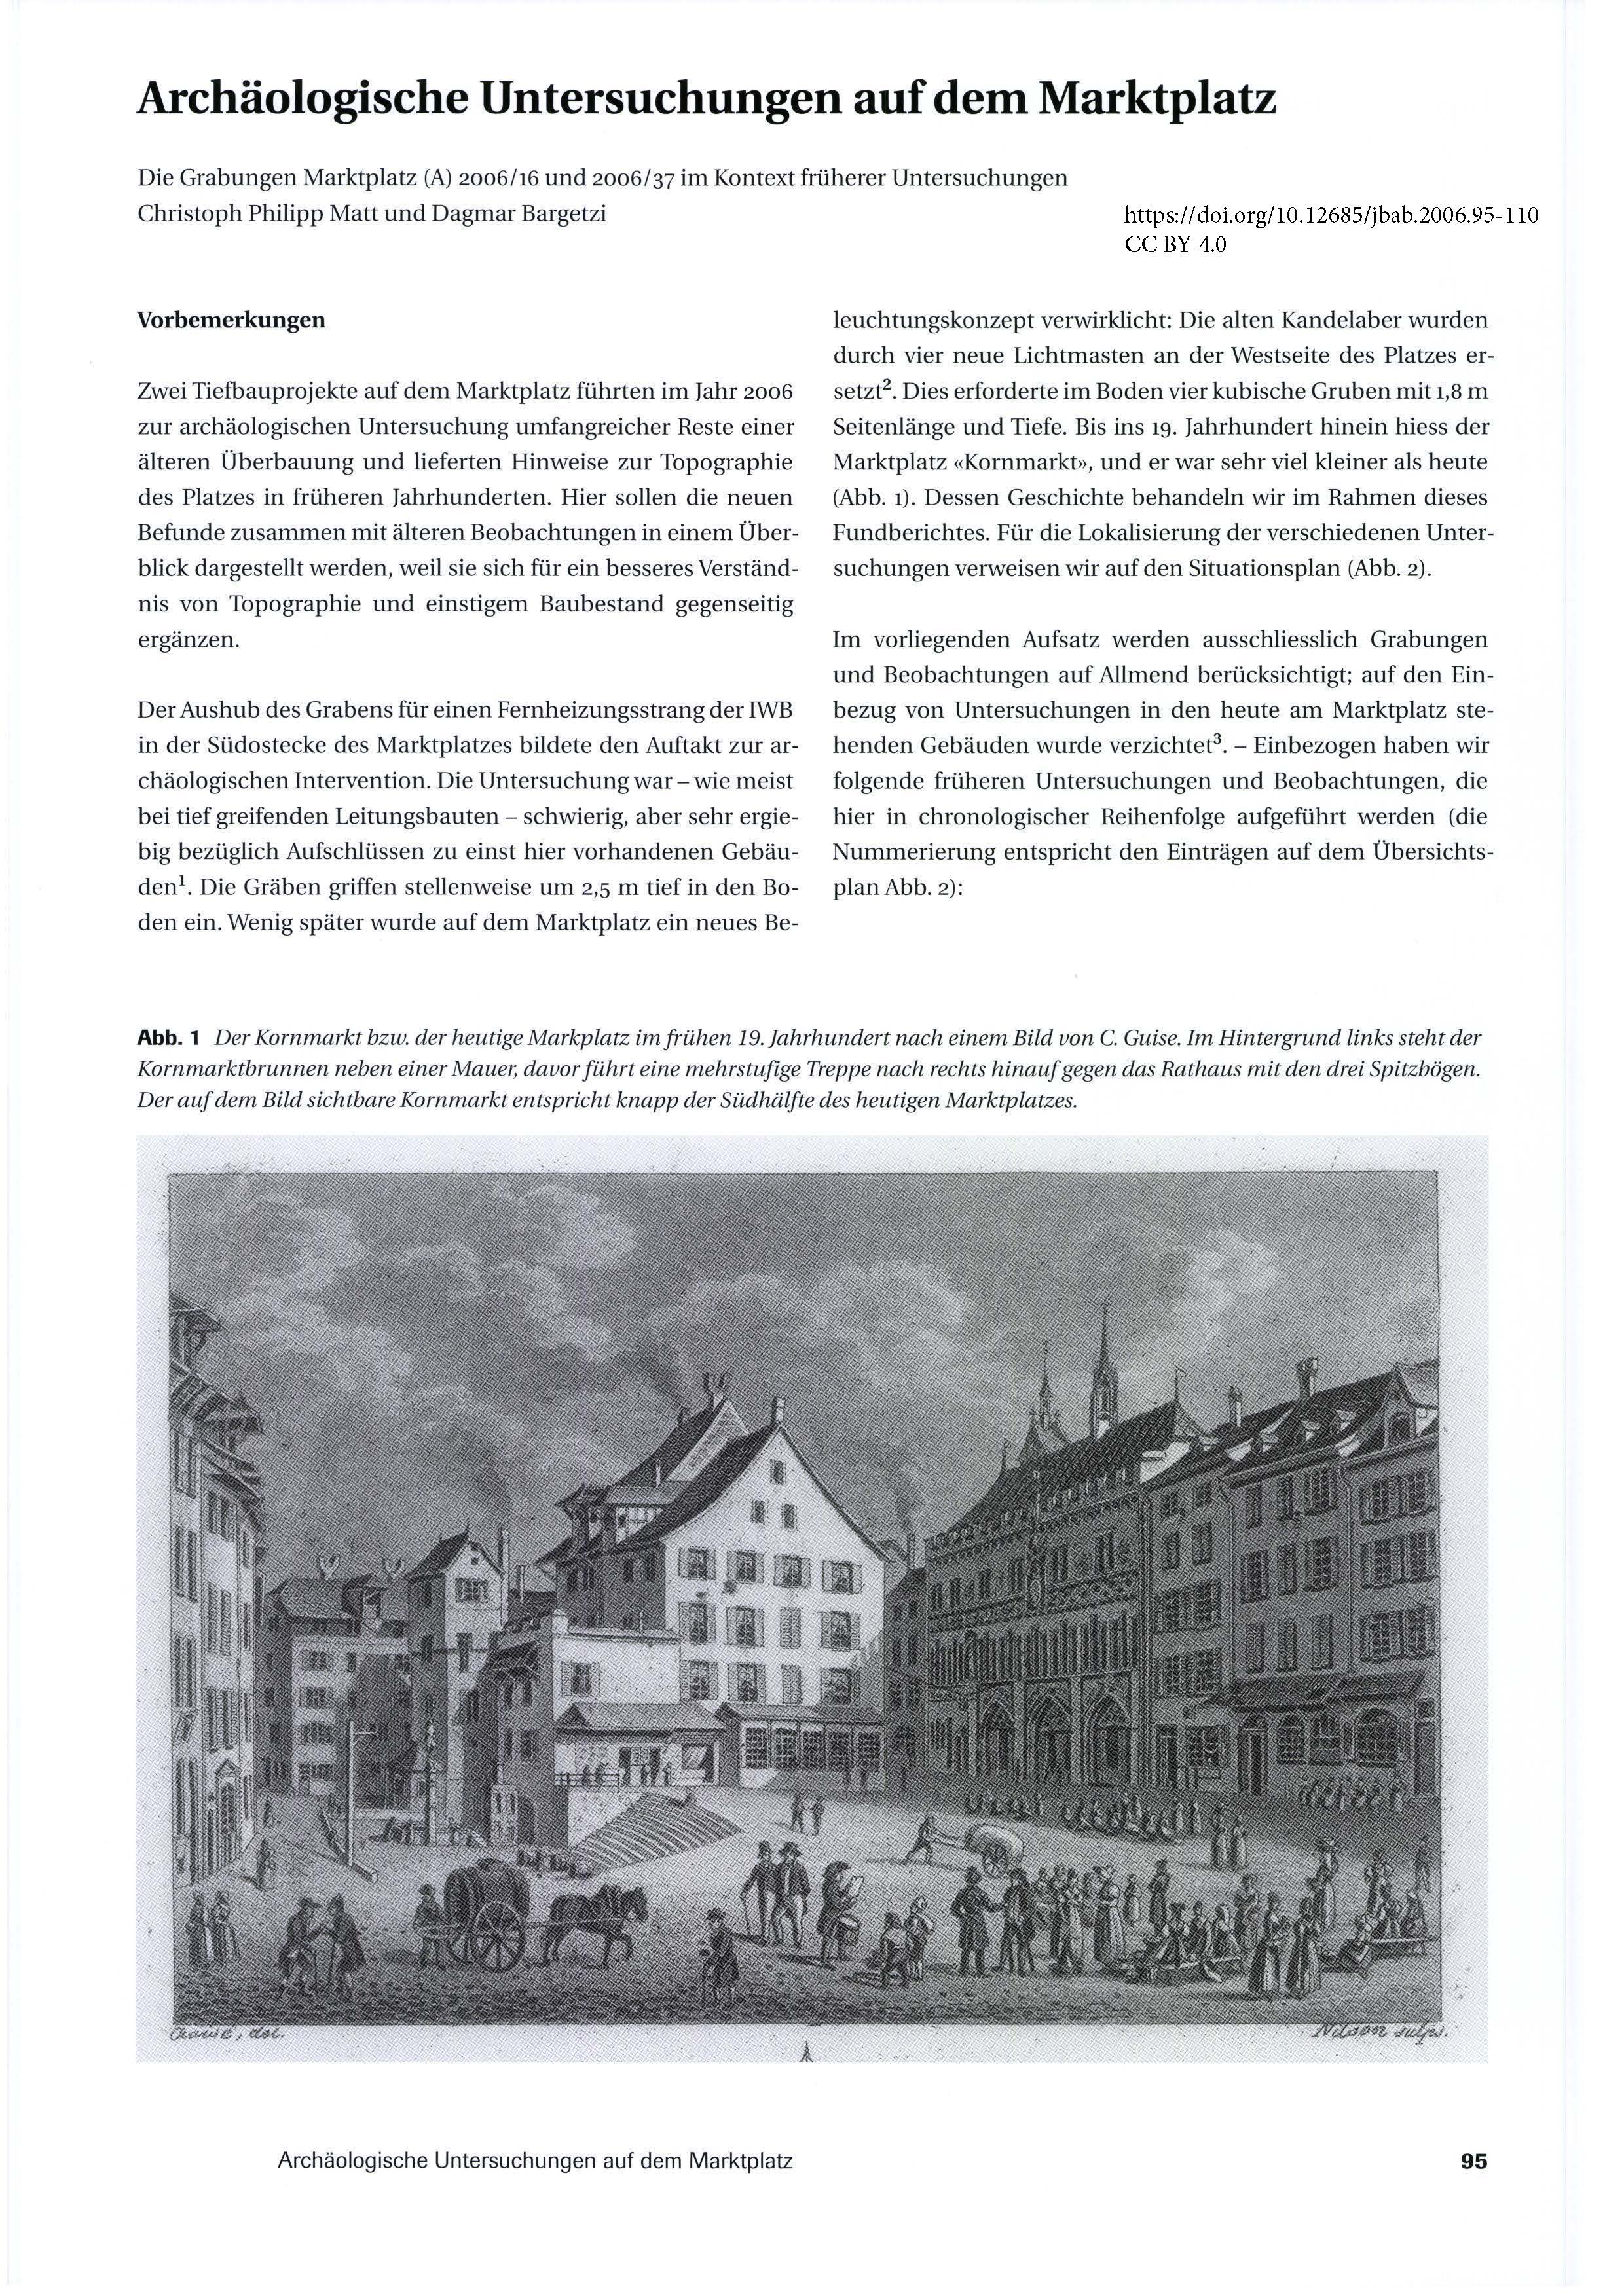 Der Kornmarkt bzw. der heutige Markplatz im frühen 19. Jahrhundert nach einem Bild von C. Guise